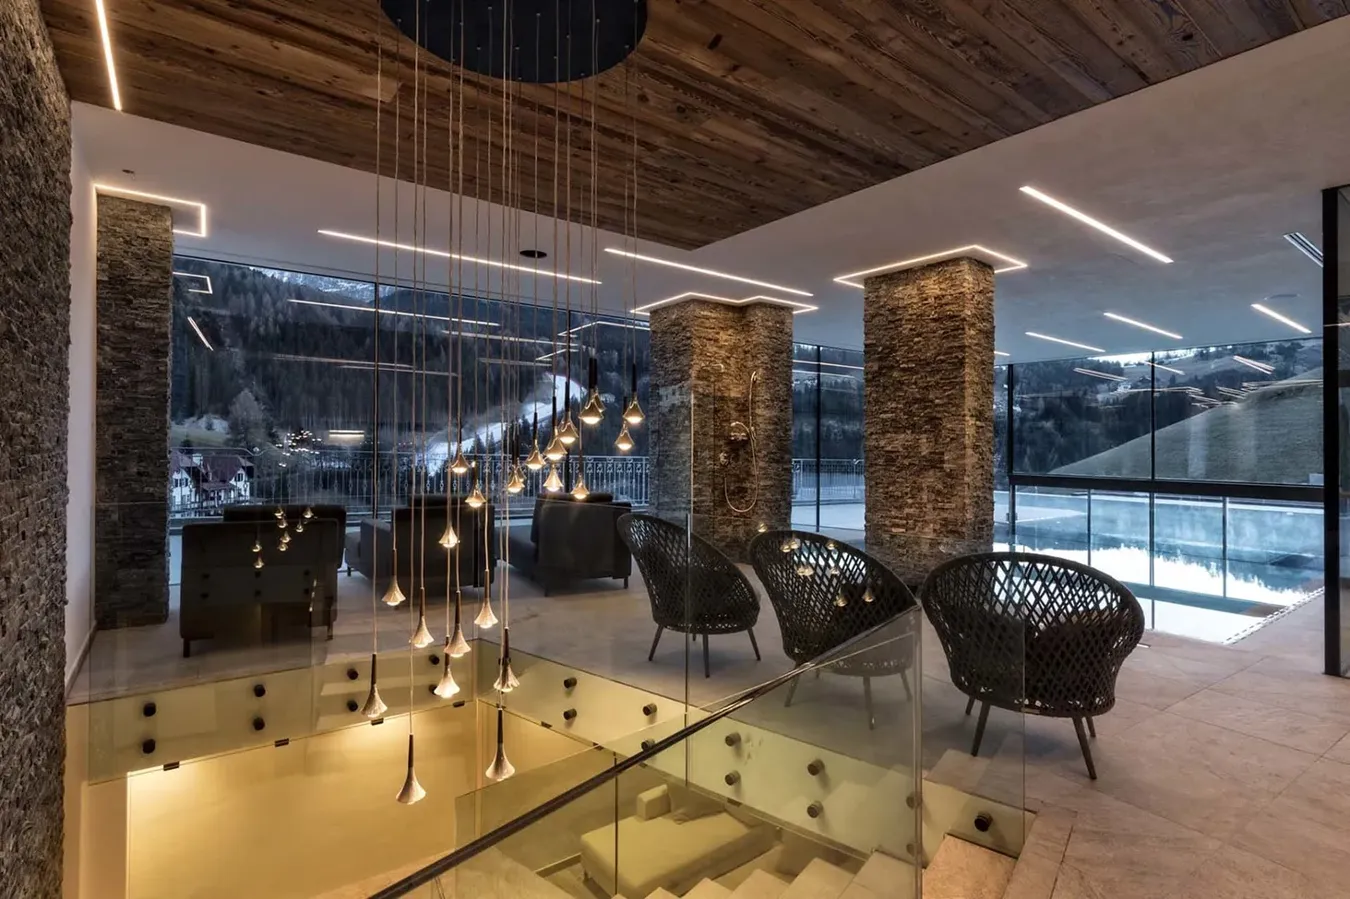 Lussuoso lounge di montagna con illuminazione moderna, pareti in pietra e vista panoramica sulla neve.